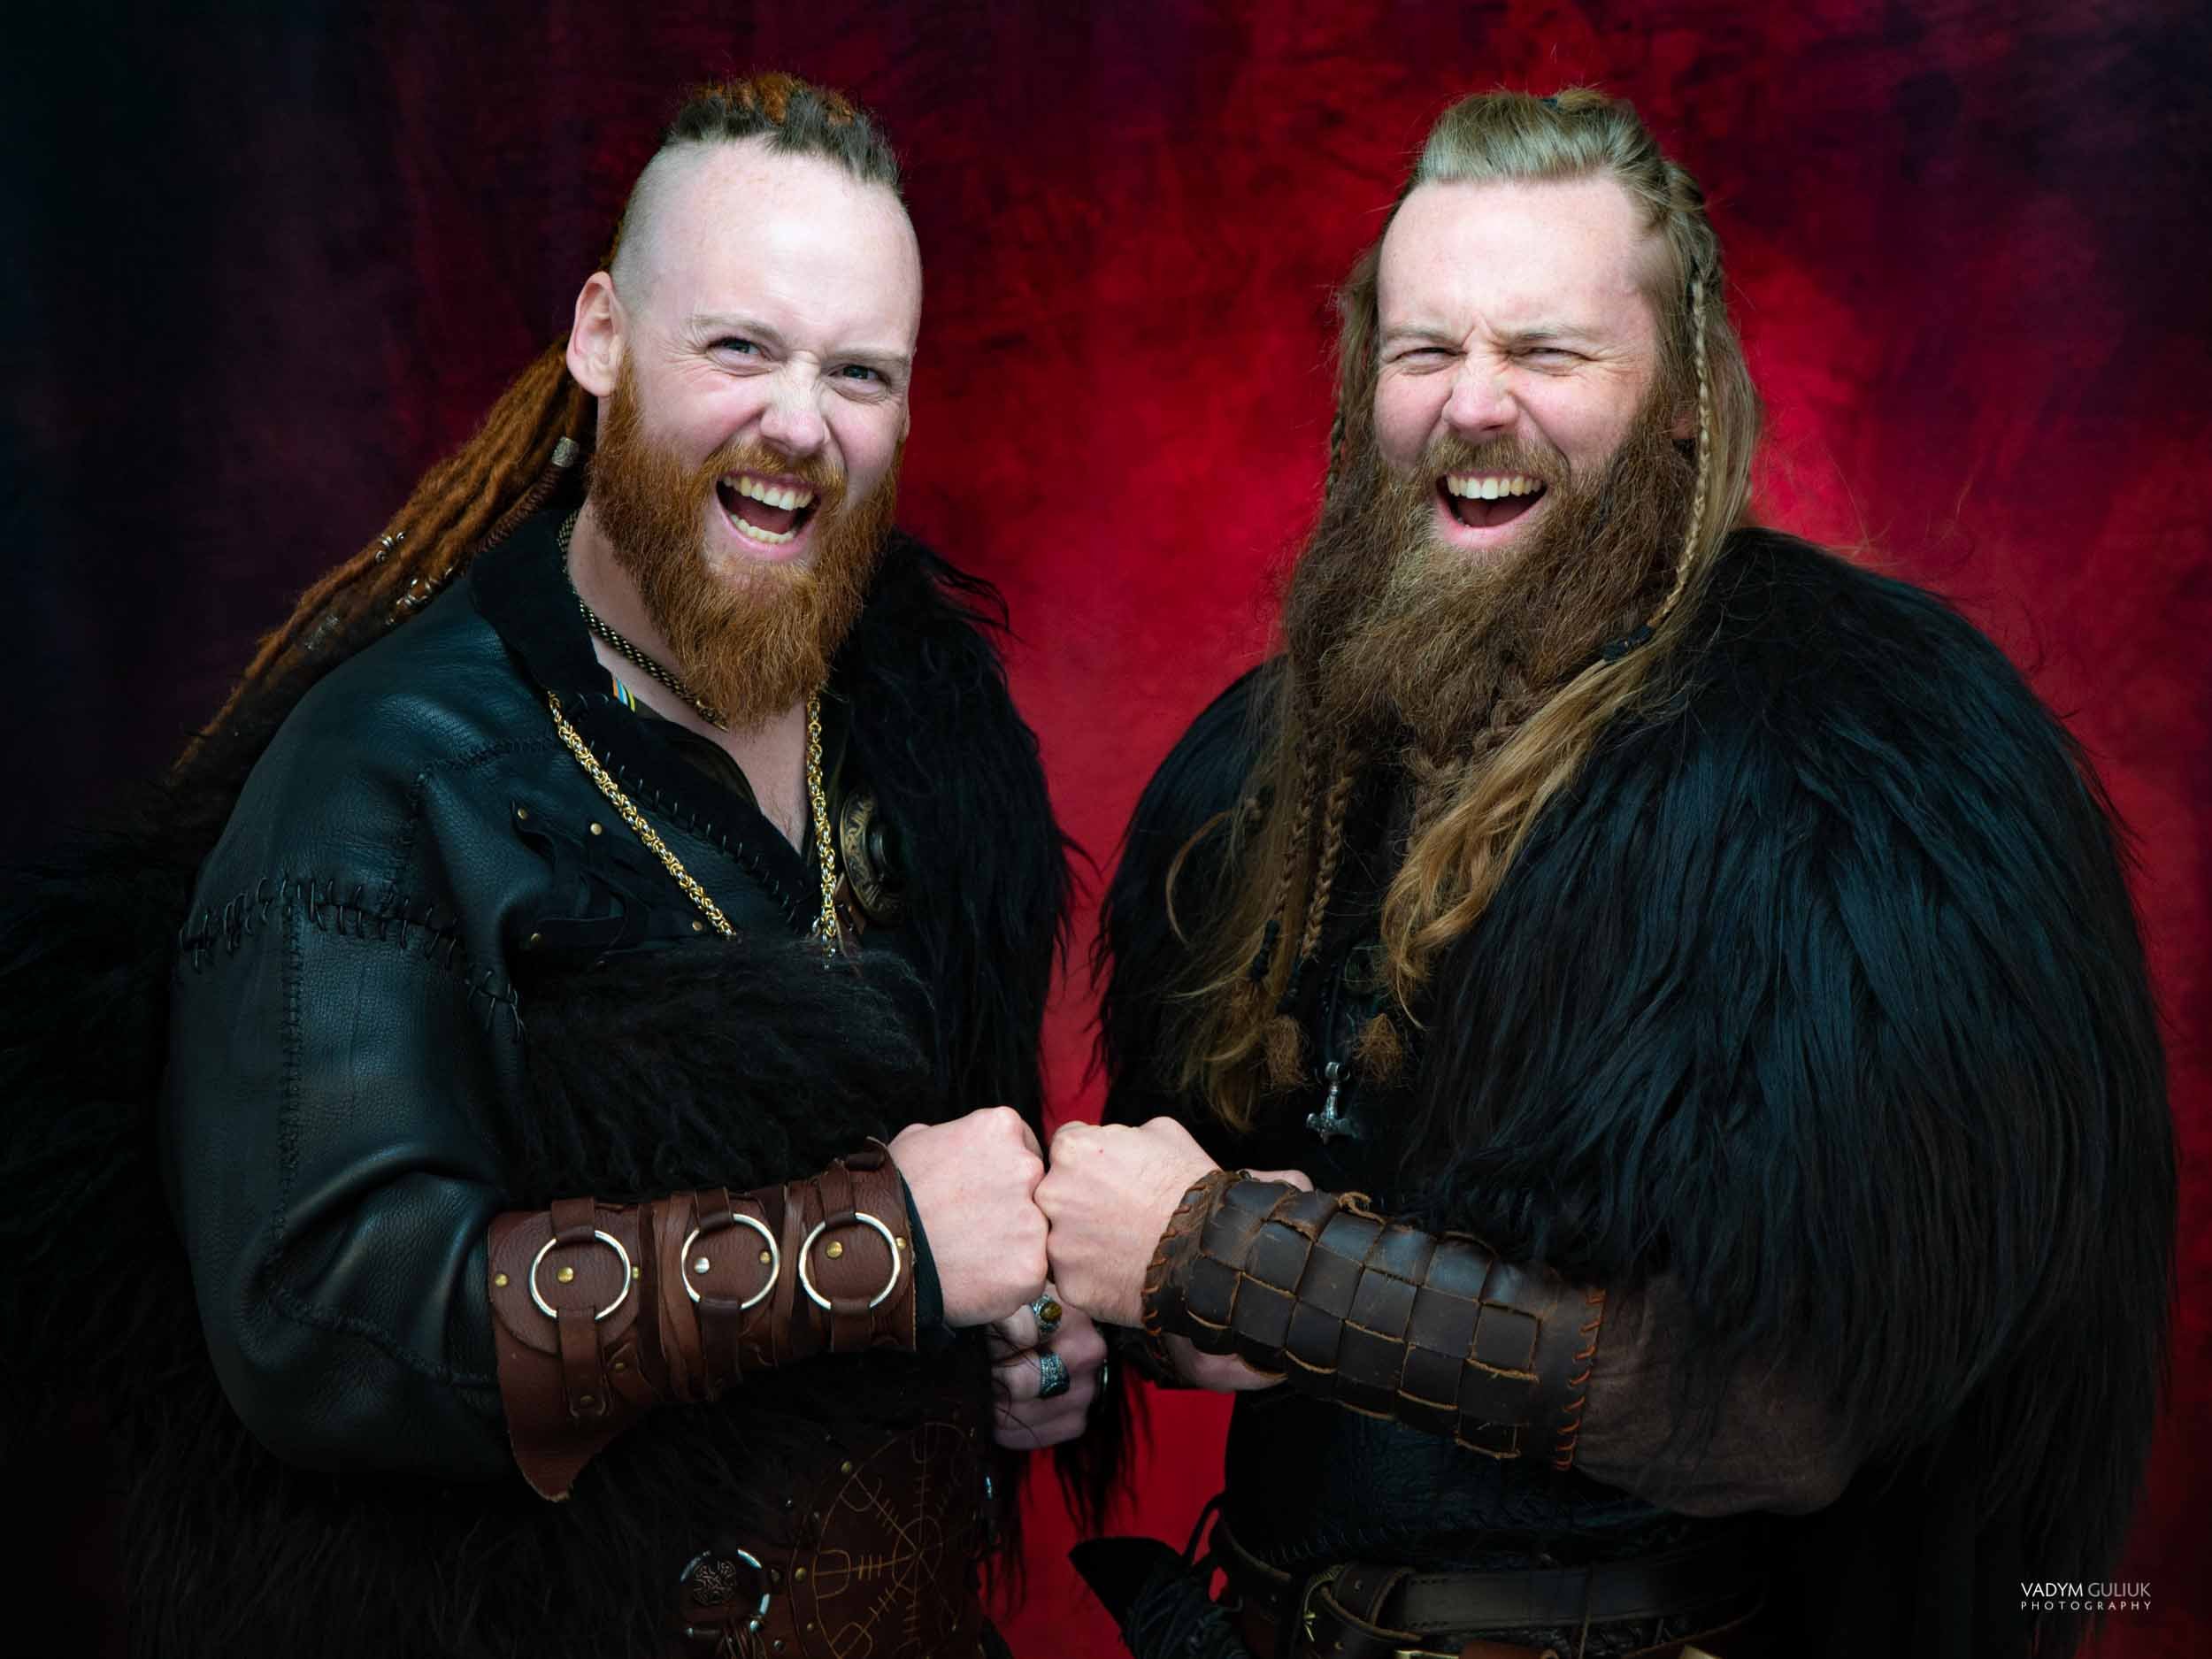 The Vikings Portraits by Vadym 2022-10.jpg